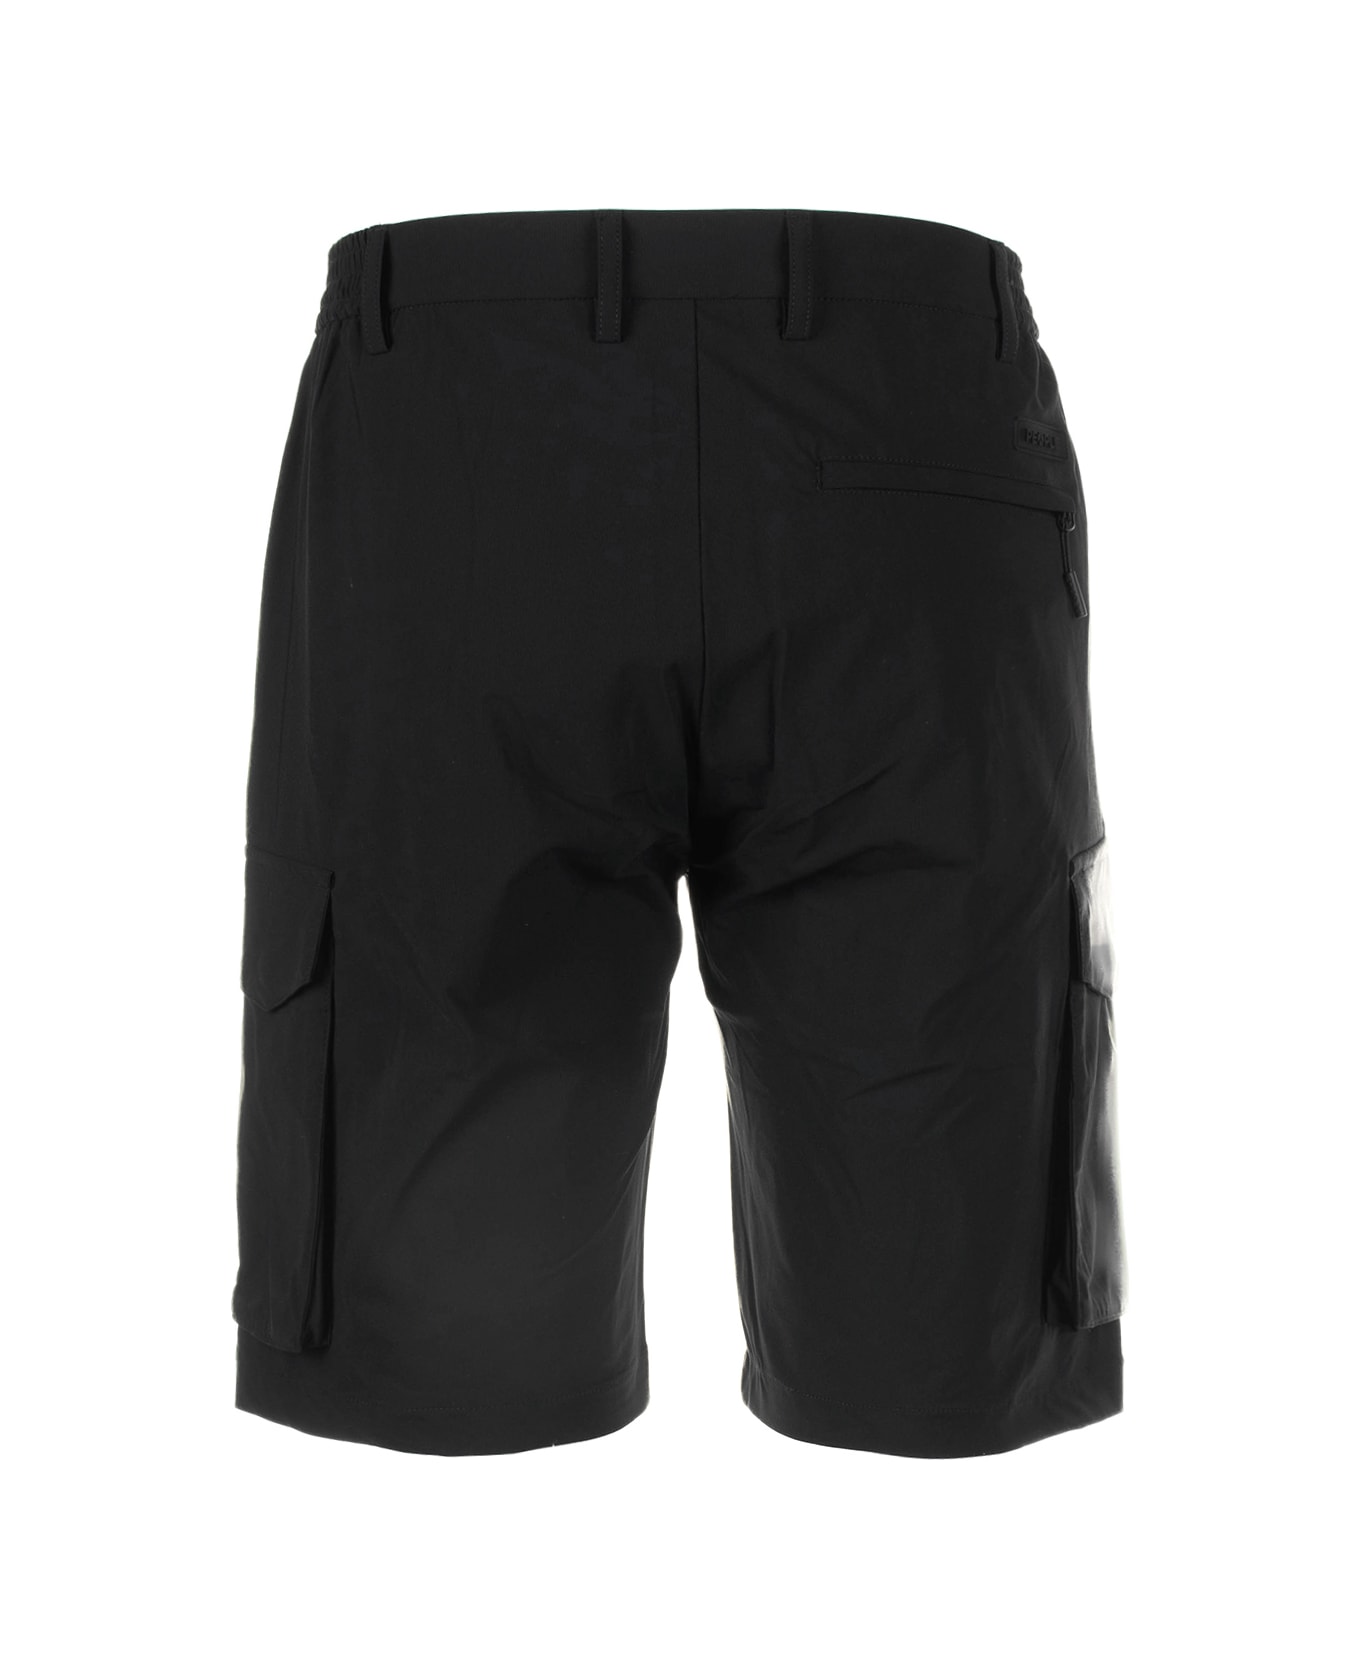 People Of Shibuya Black Men's Bermuda Shorts - NERO ショートパンツ